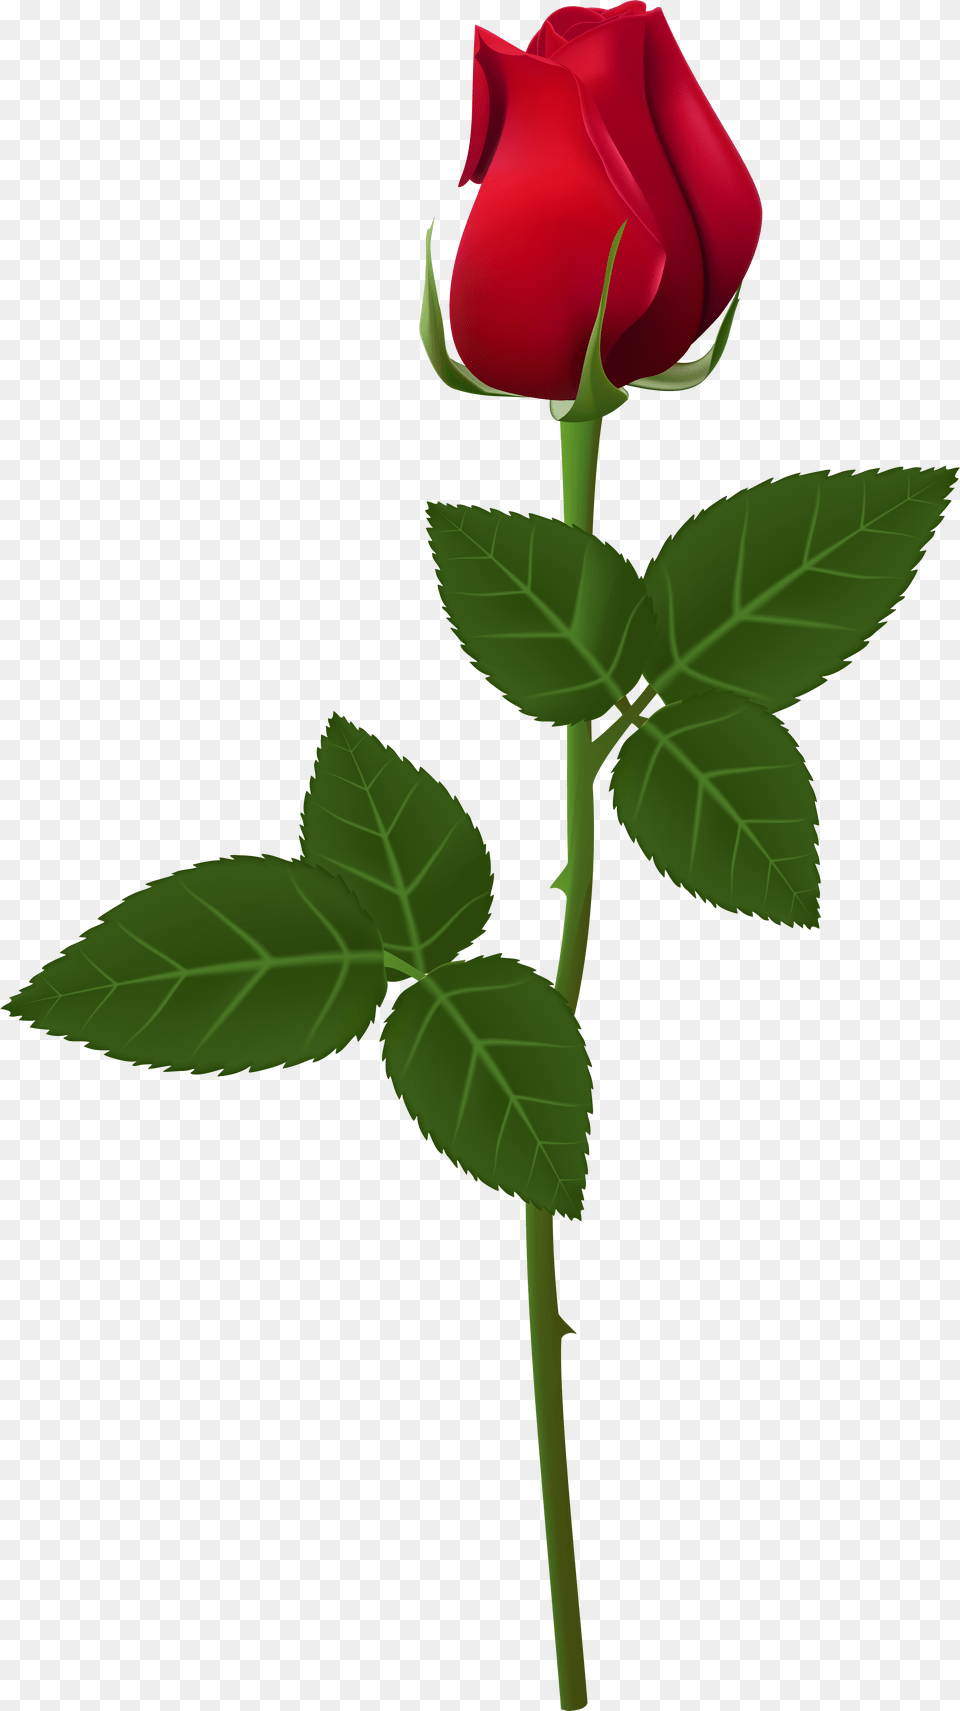 Rose For Picsart, Flower, Plant, Leaf Png Image